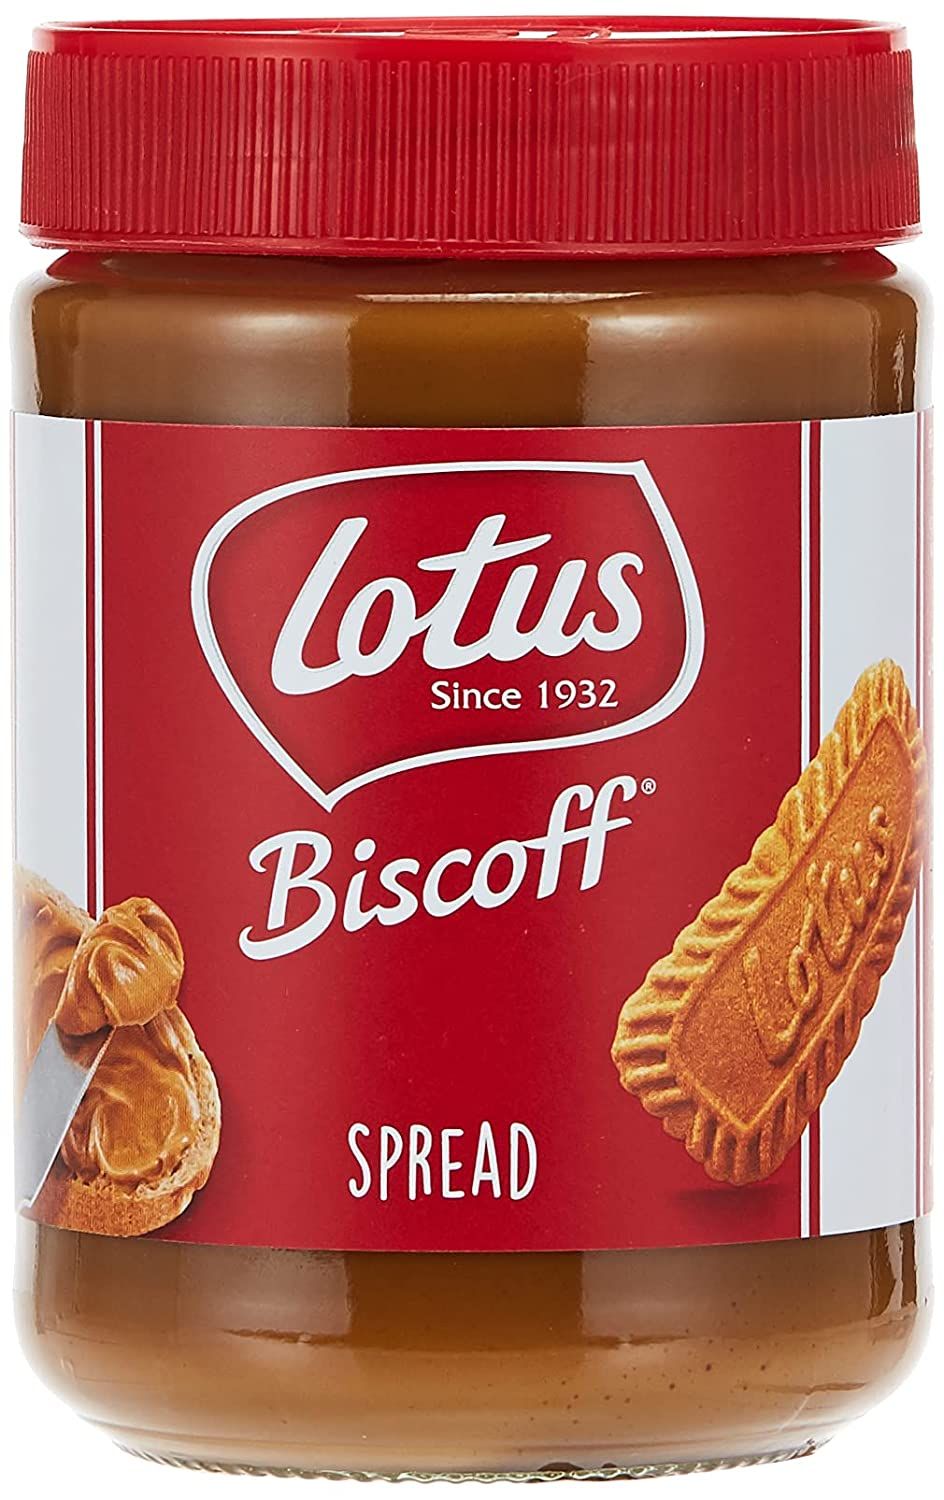 Lotus Biscoff Spread Image